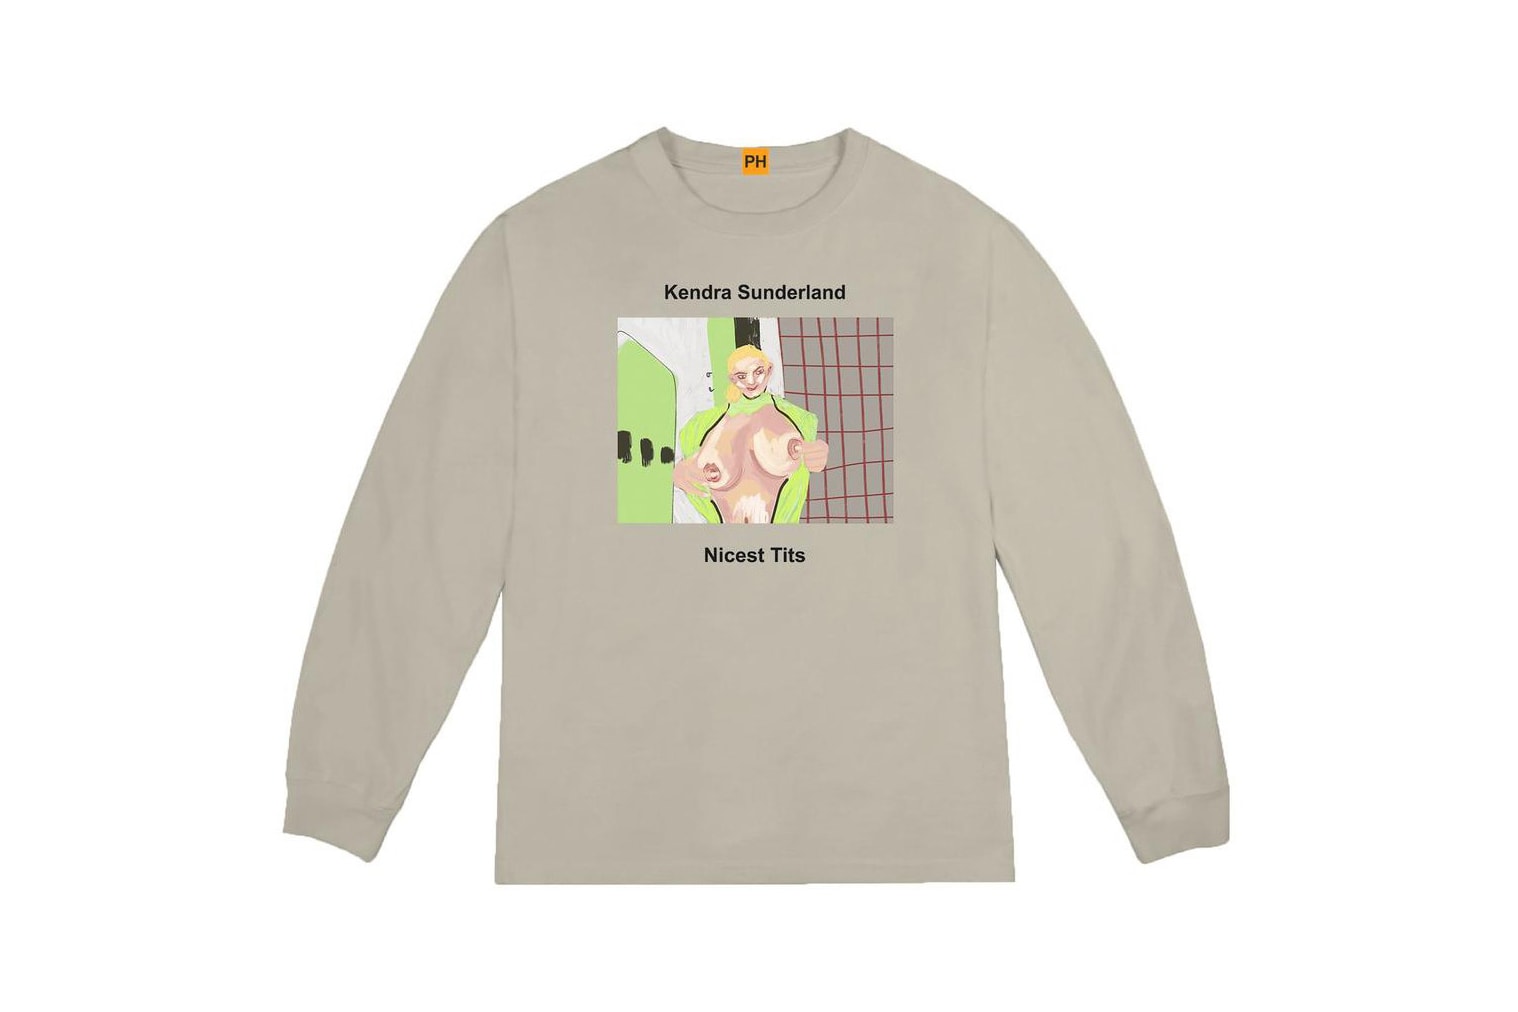 Pornhub YEEZY Kanye West Kendra Sunderland Long Sleeve Shirt Collaboration Capsule Collection